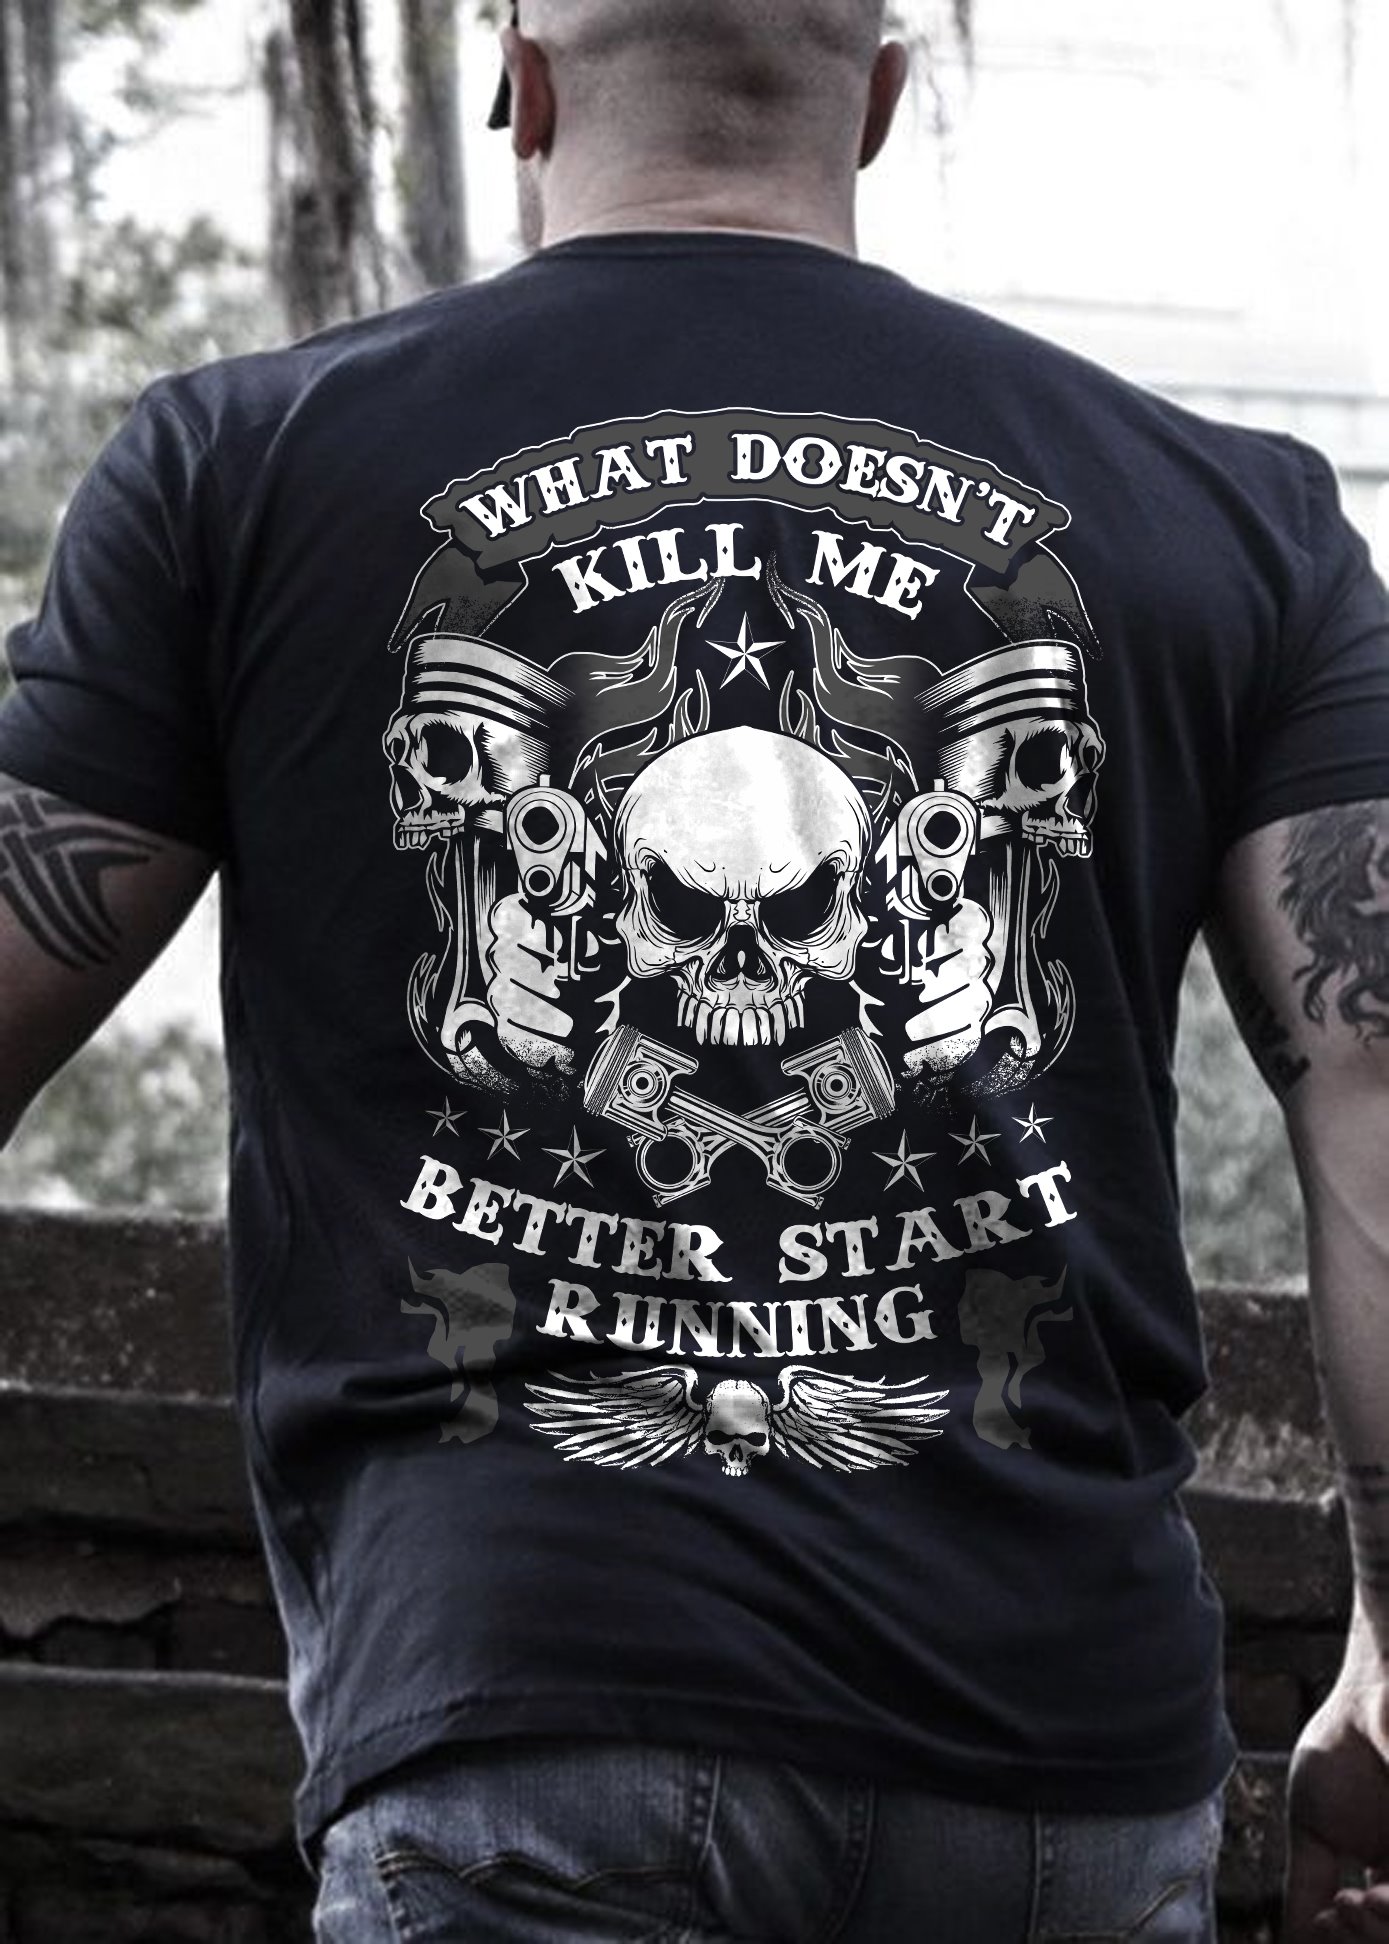 What doesn't kill me better start running - Evil skullcap and guns